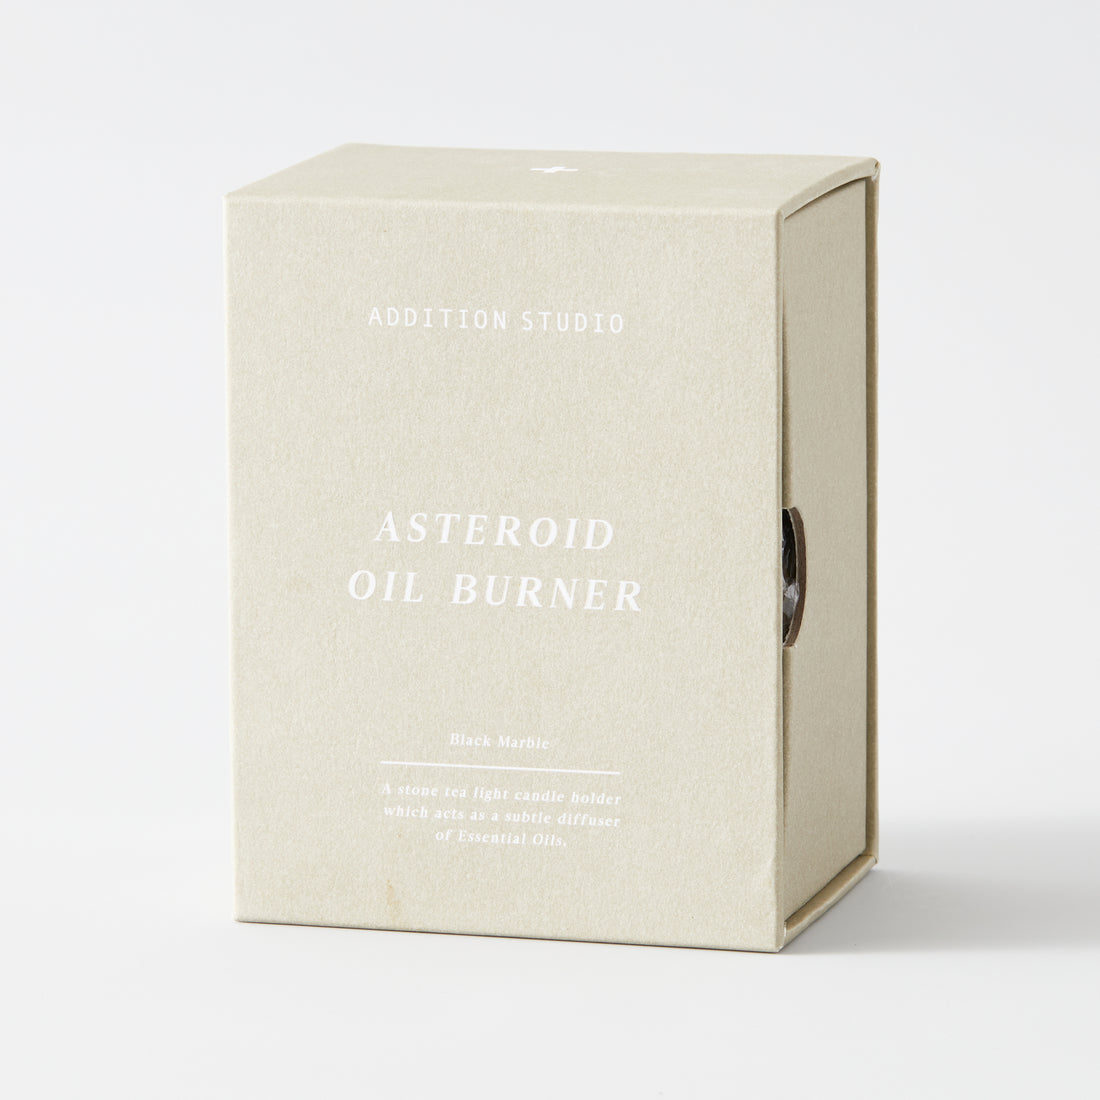 Addition Studio Asteroid Burner Black Marble